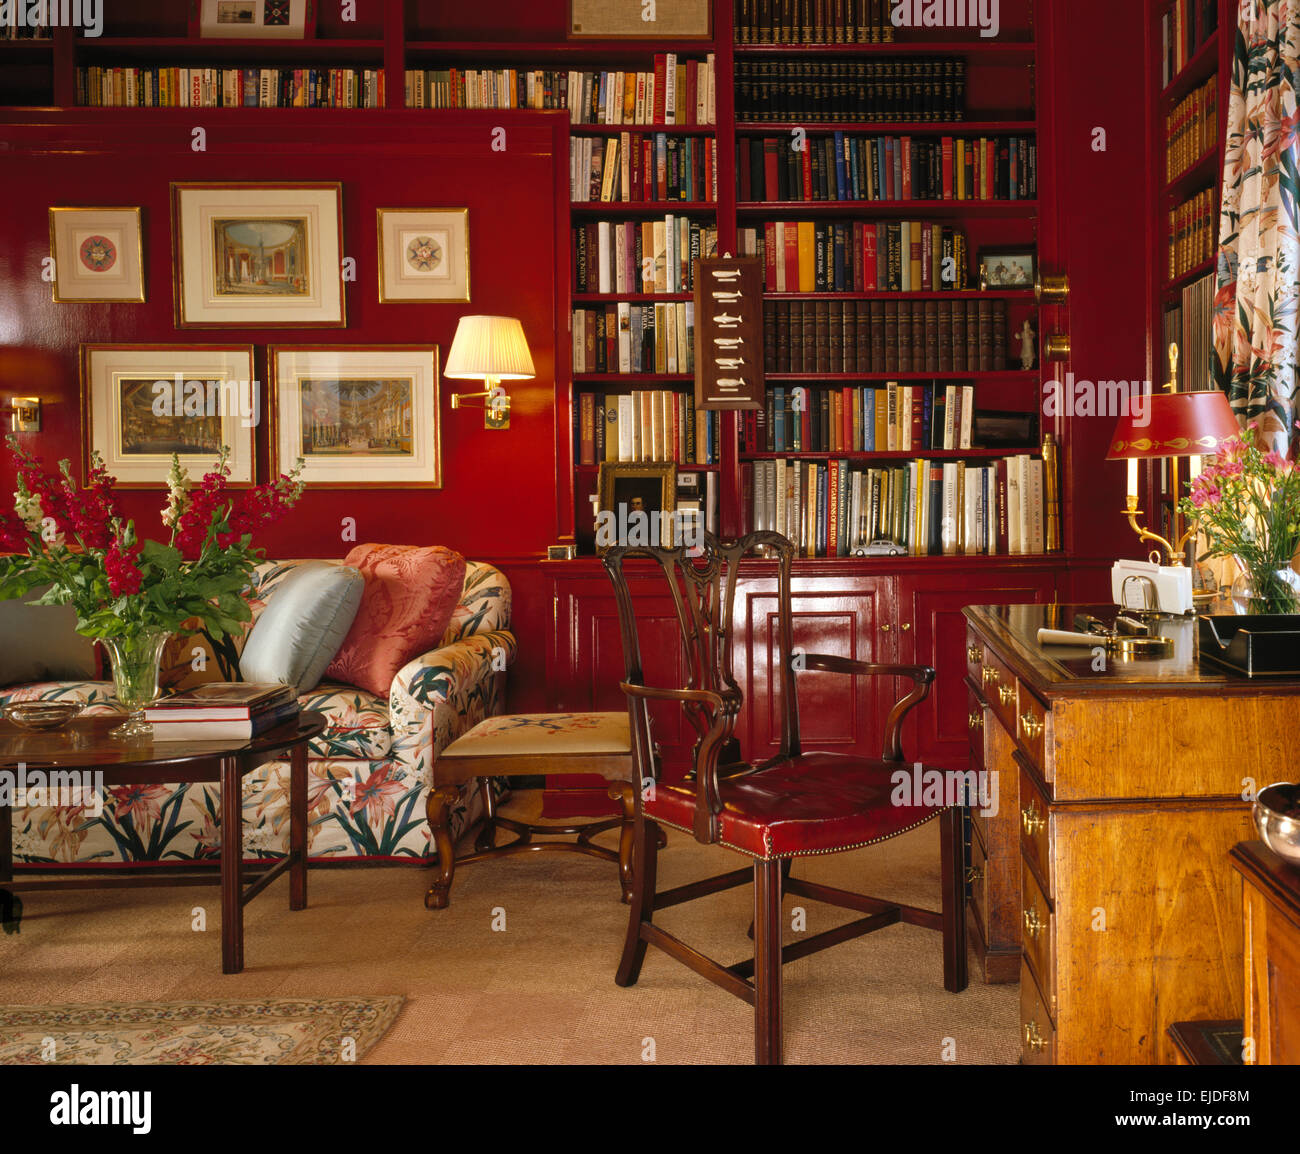 Bilder an der Wand über florale Sofa in Rot der achtziger Jahre zu studieren, mit eingebauten Bücherregalen und einem antiken Schreibtisch Stockfoto